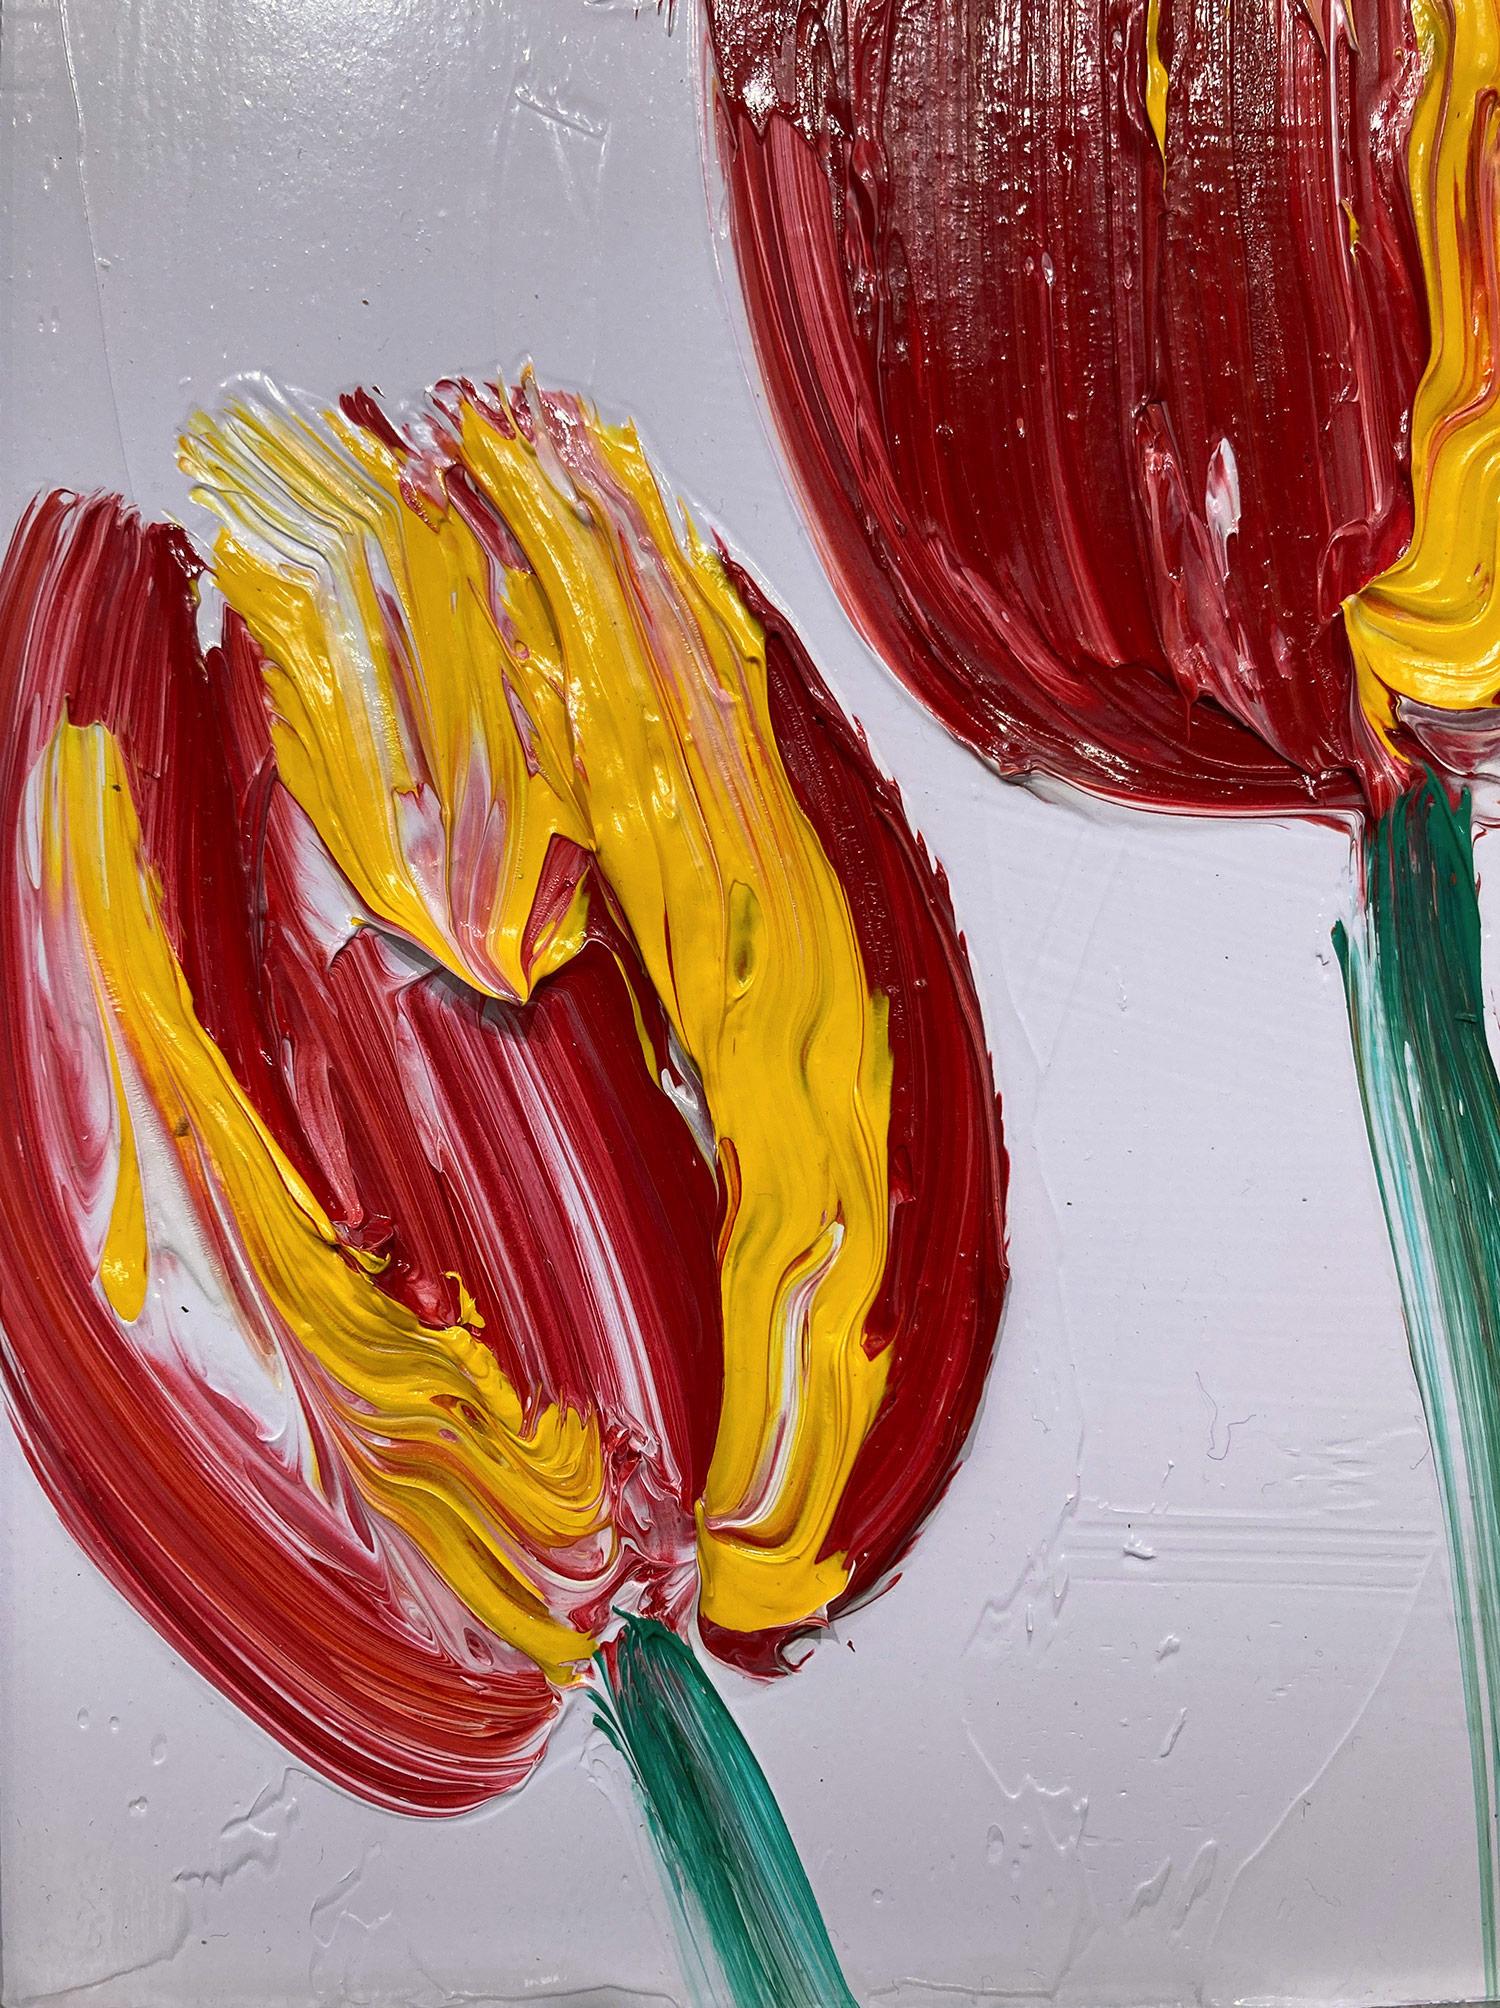 Eine wunderbare Komposition aus einer der neuesten Serien von Slonem, den Tulpen. Dieses Werk zeigt gestische Figuren von roten und gelben Tulpen auf einem hellen lavendelfarbenen Hintergrund mit dickem Farbauftrag. Es ist in einem wunderschönen